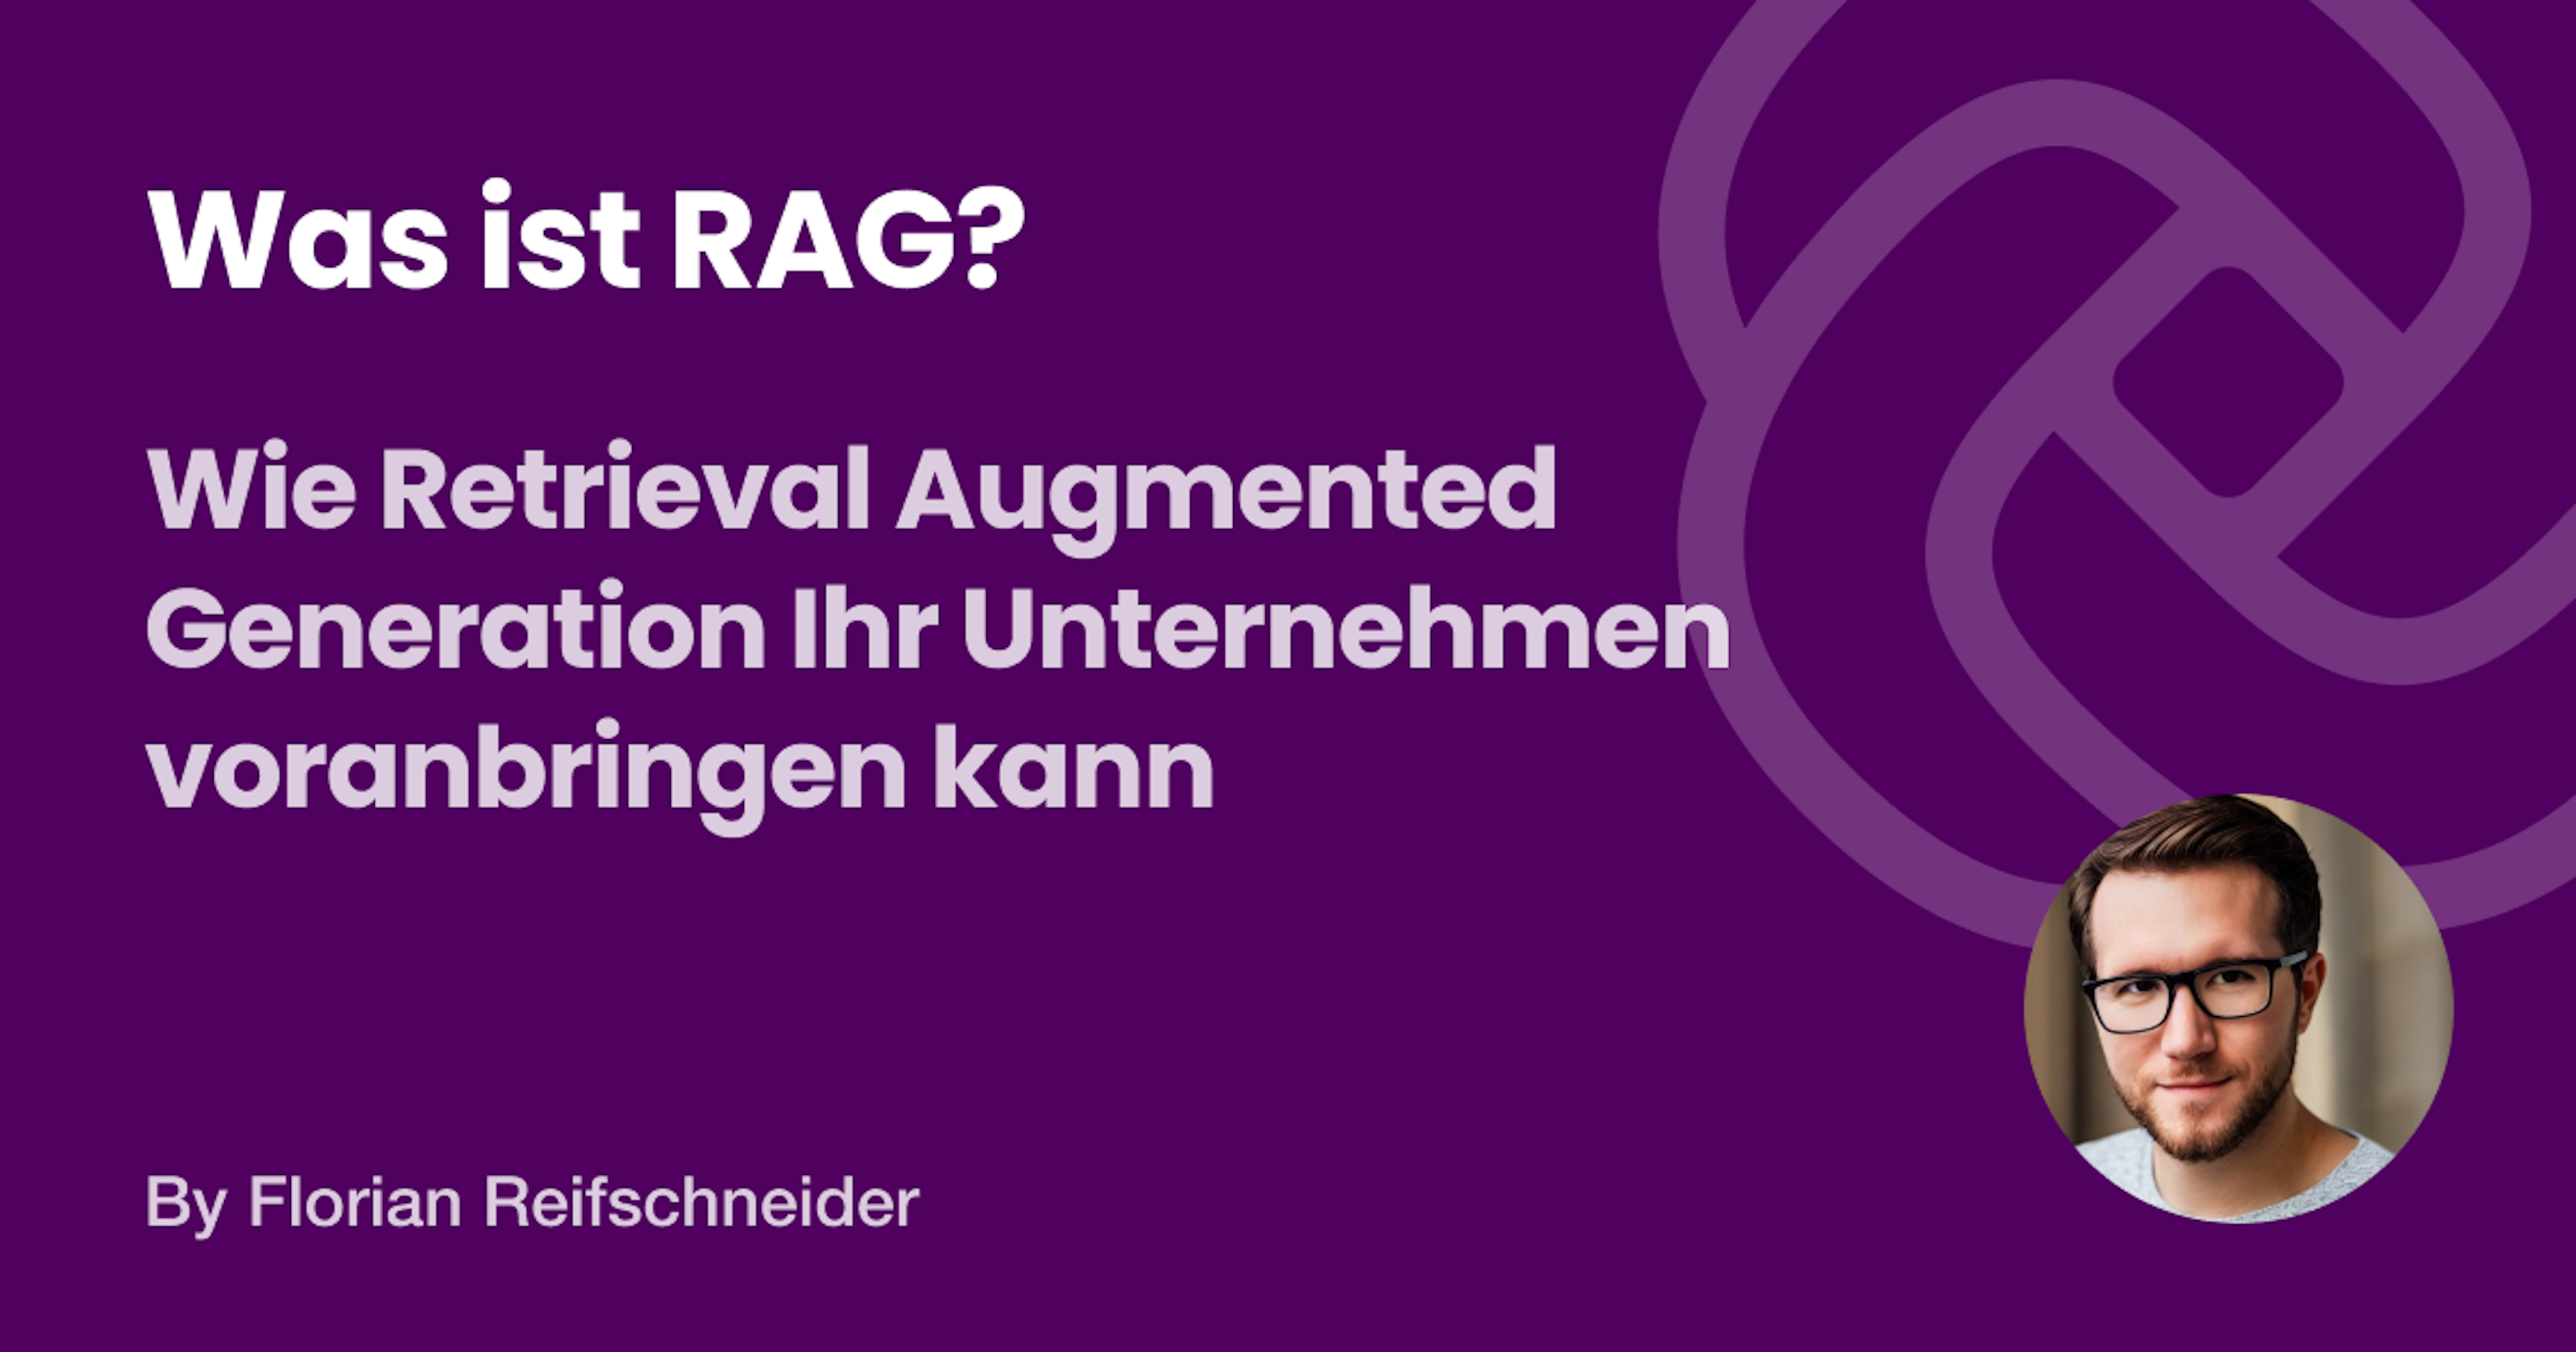 RAG ist ein leistungsfähiger KI-Workflow, der es Nutzern ermöglicht, intuitiv und mühelos Fragen zu stellen und wertvolle Erkenntnisse aus großen Dokumentenmengen zu gewinnen.